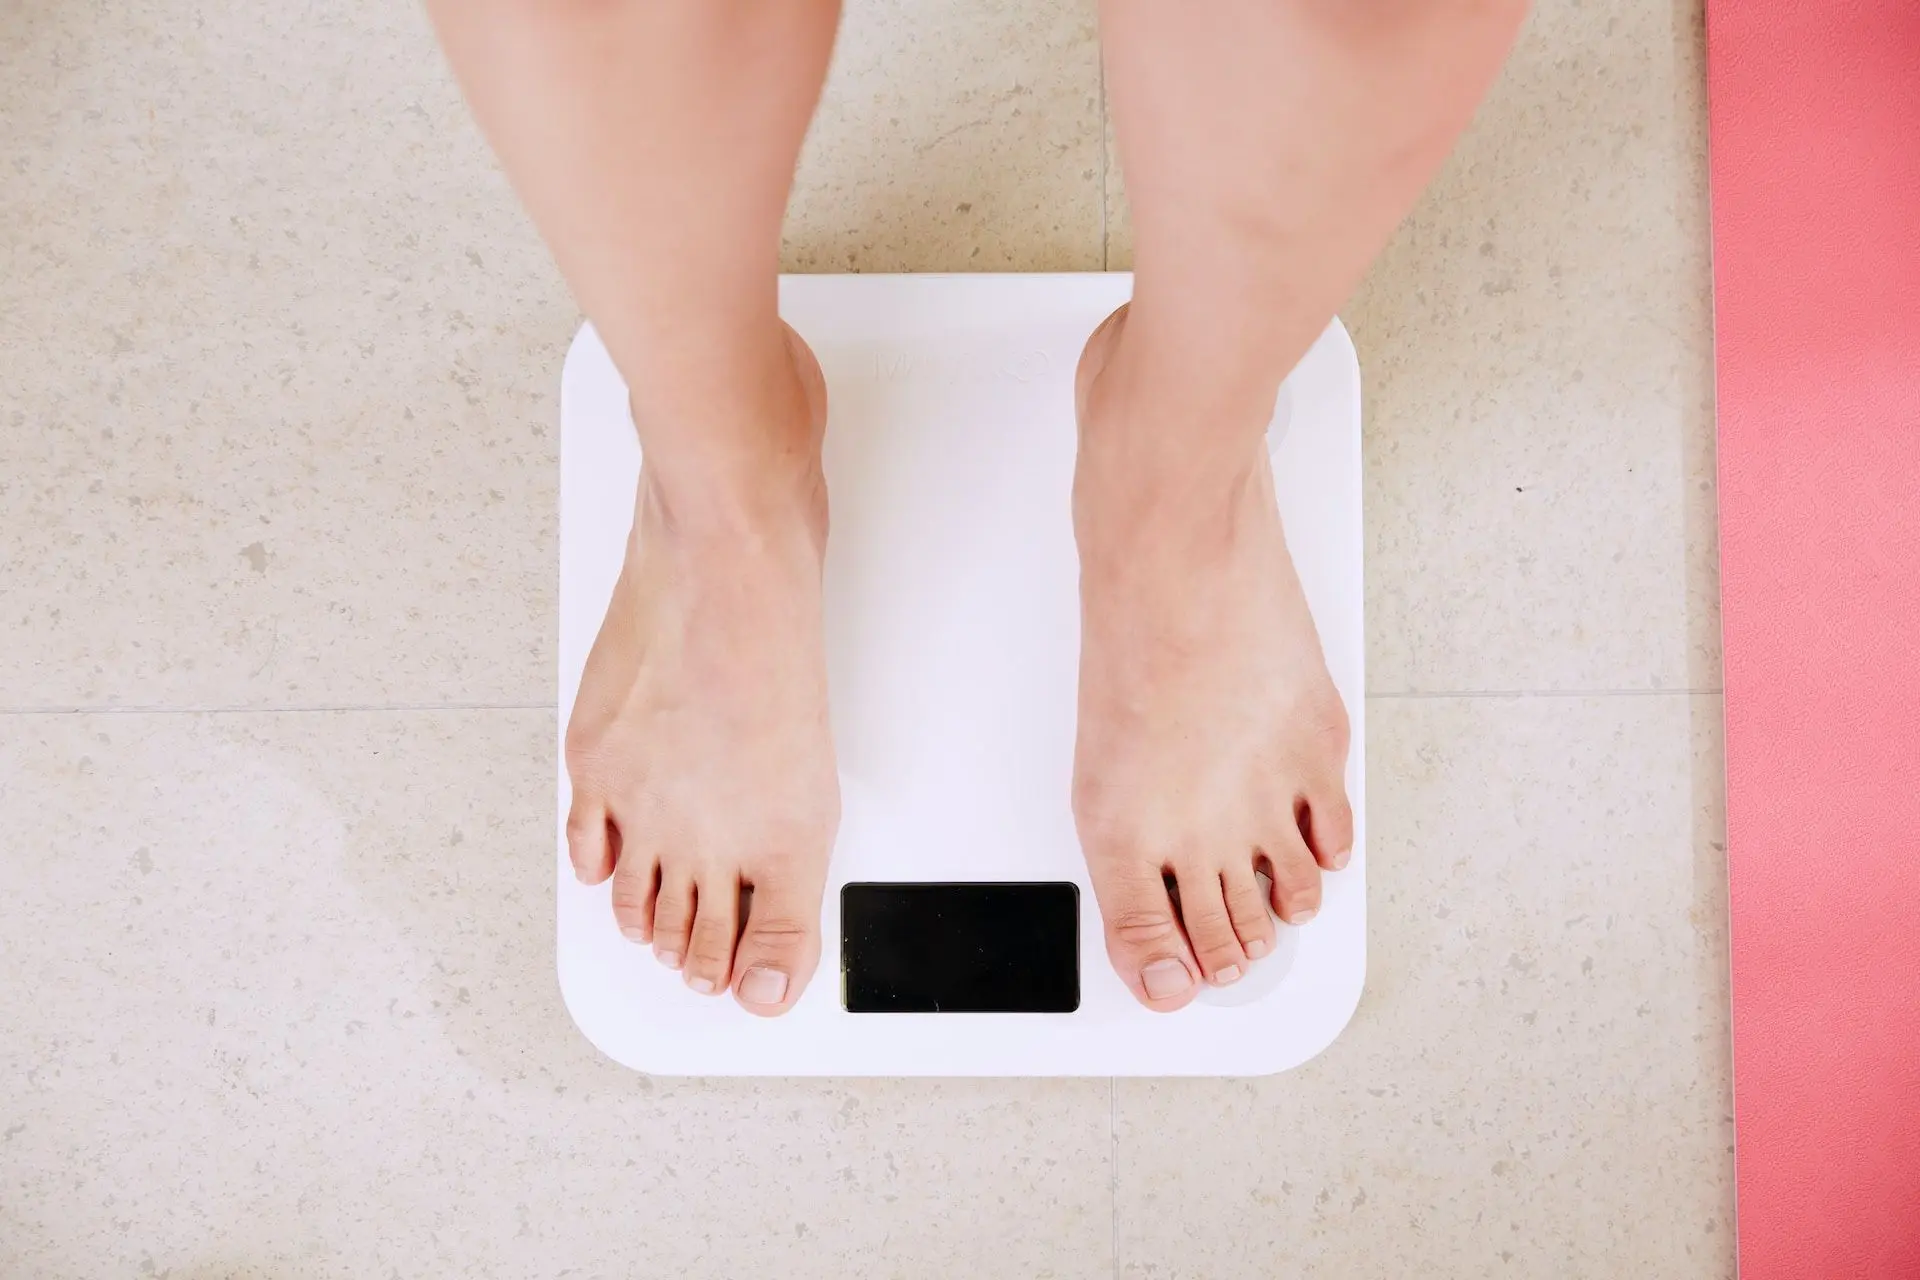 Зменшення ваги може свідчити про наявність серйозного захворювання